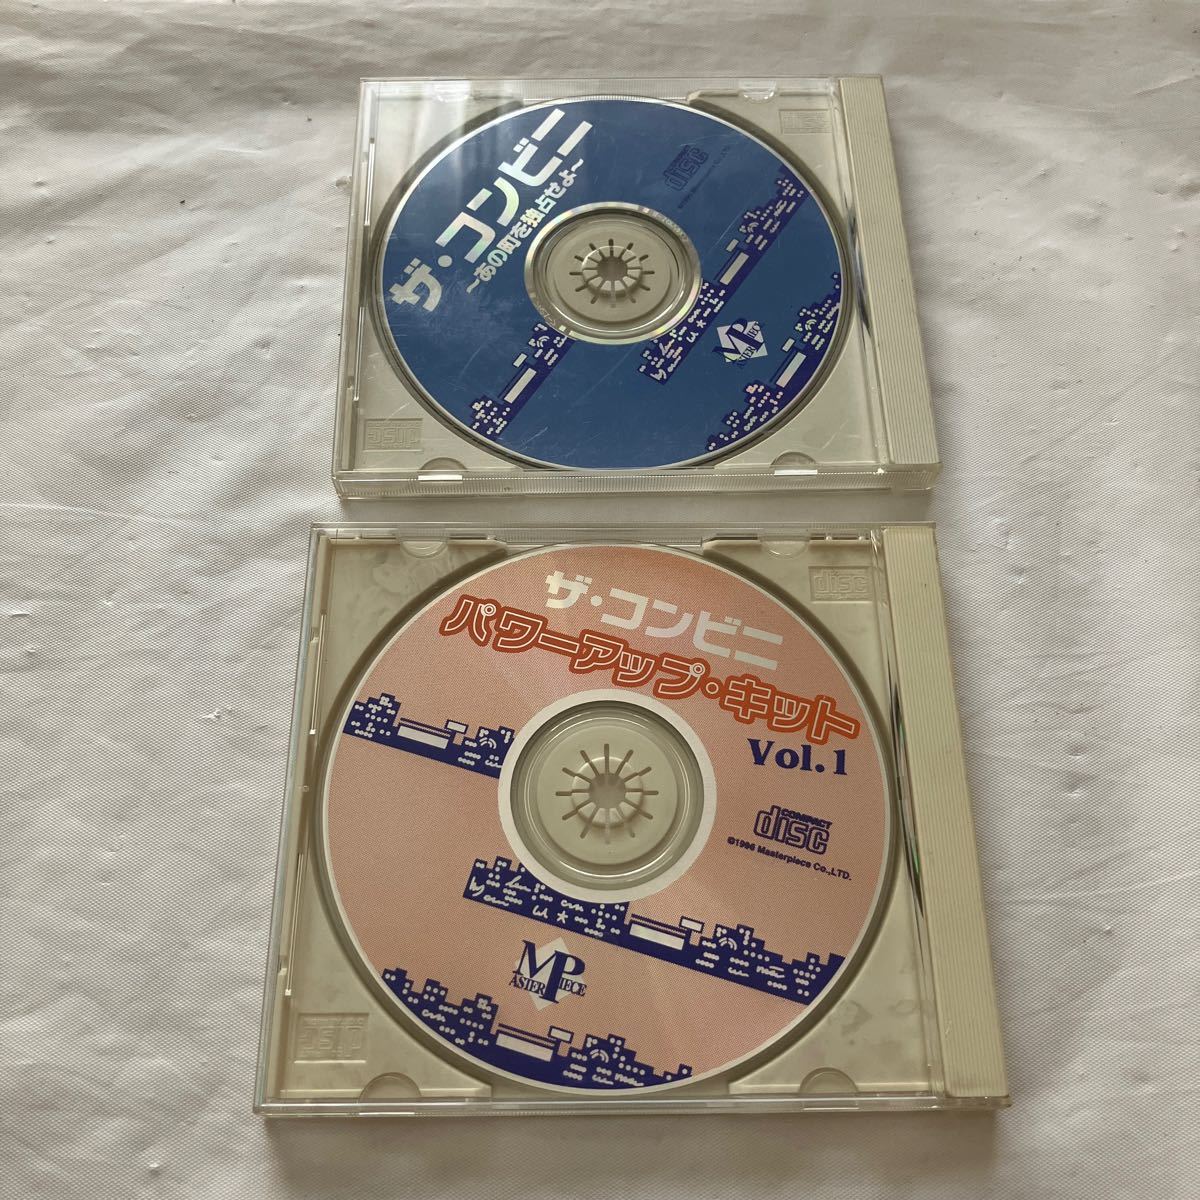 ザ・コンビニ CD-ROM Windowsの画像1